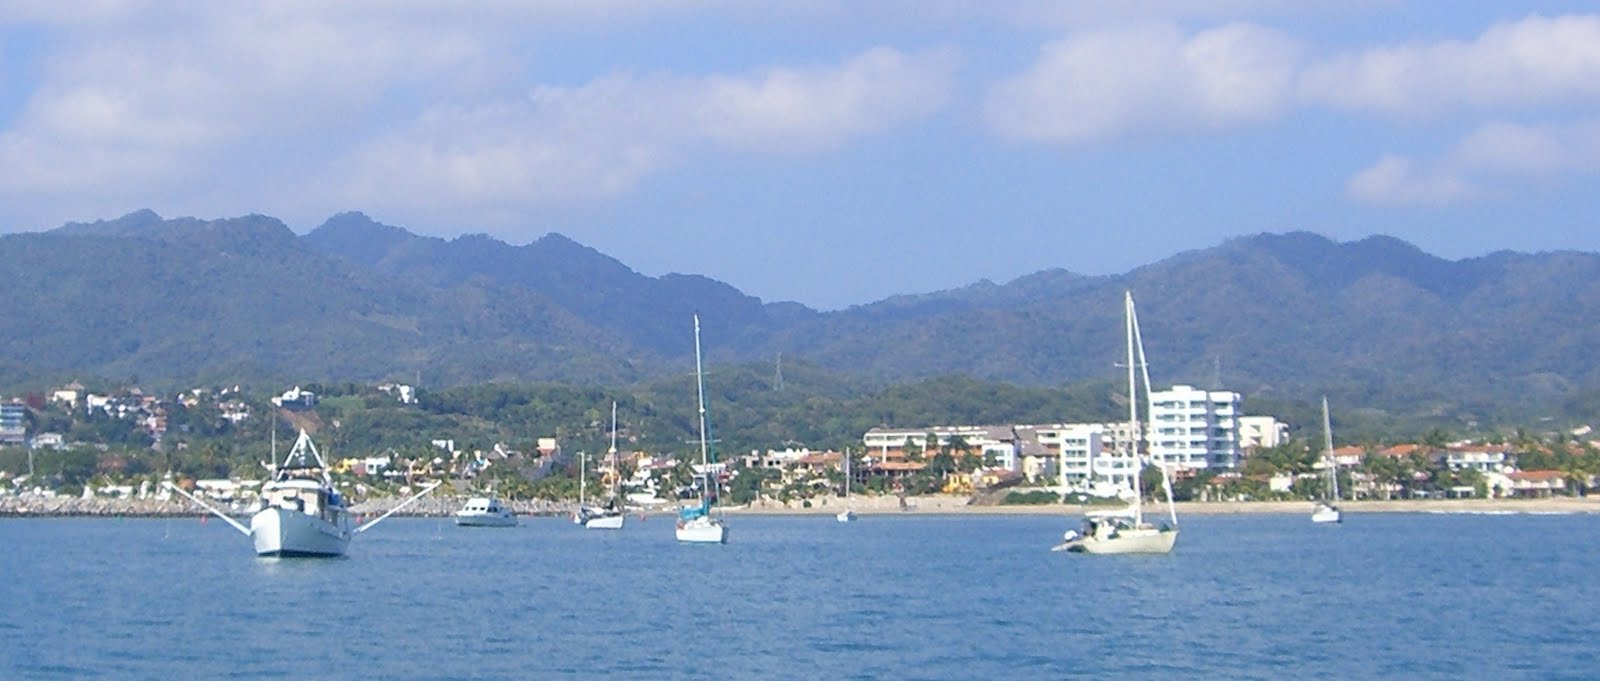 la cruz mexico anchorage sailboats